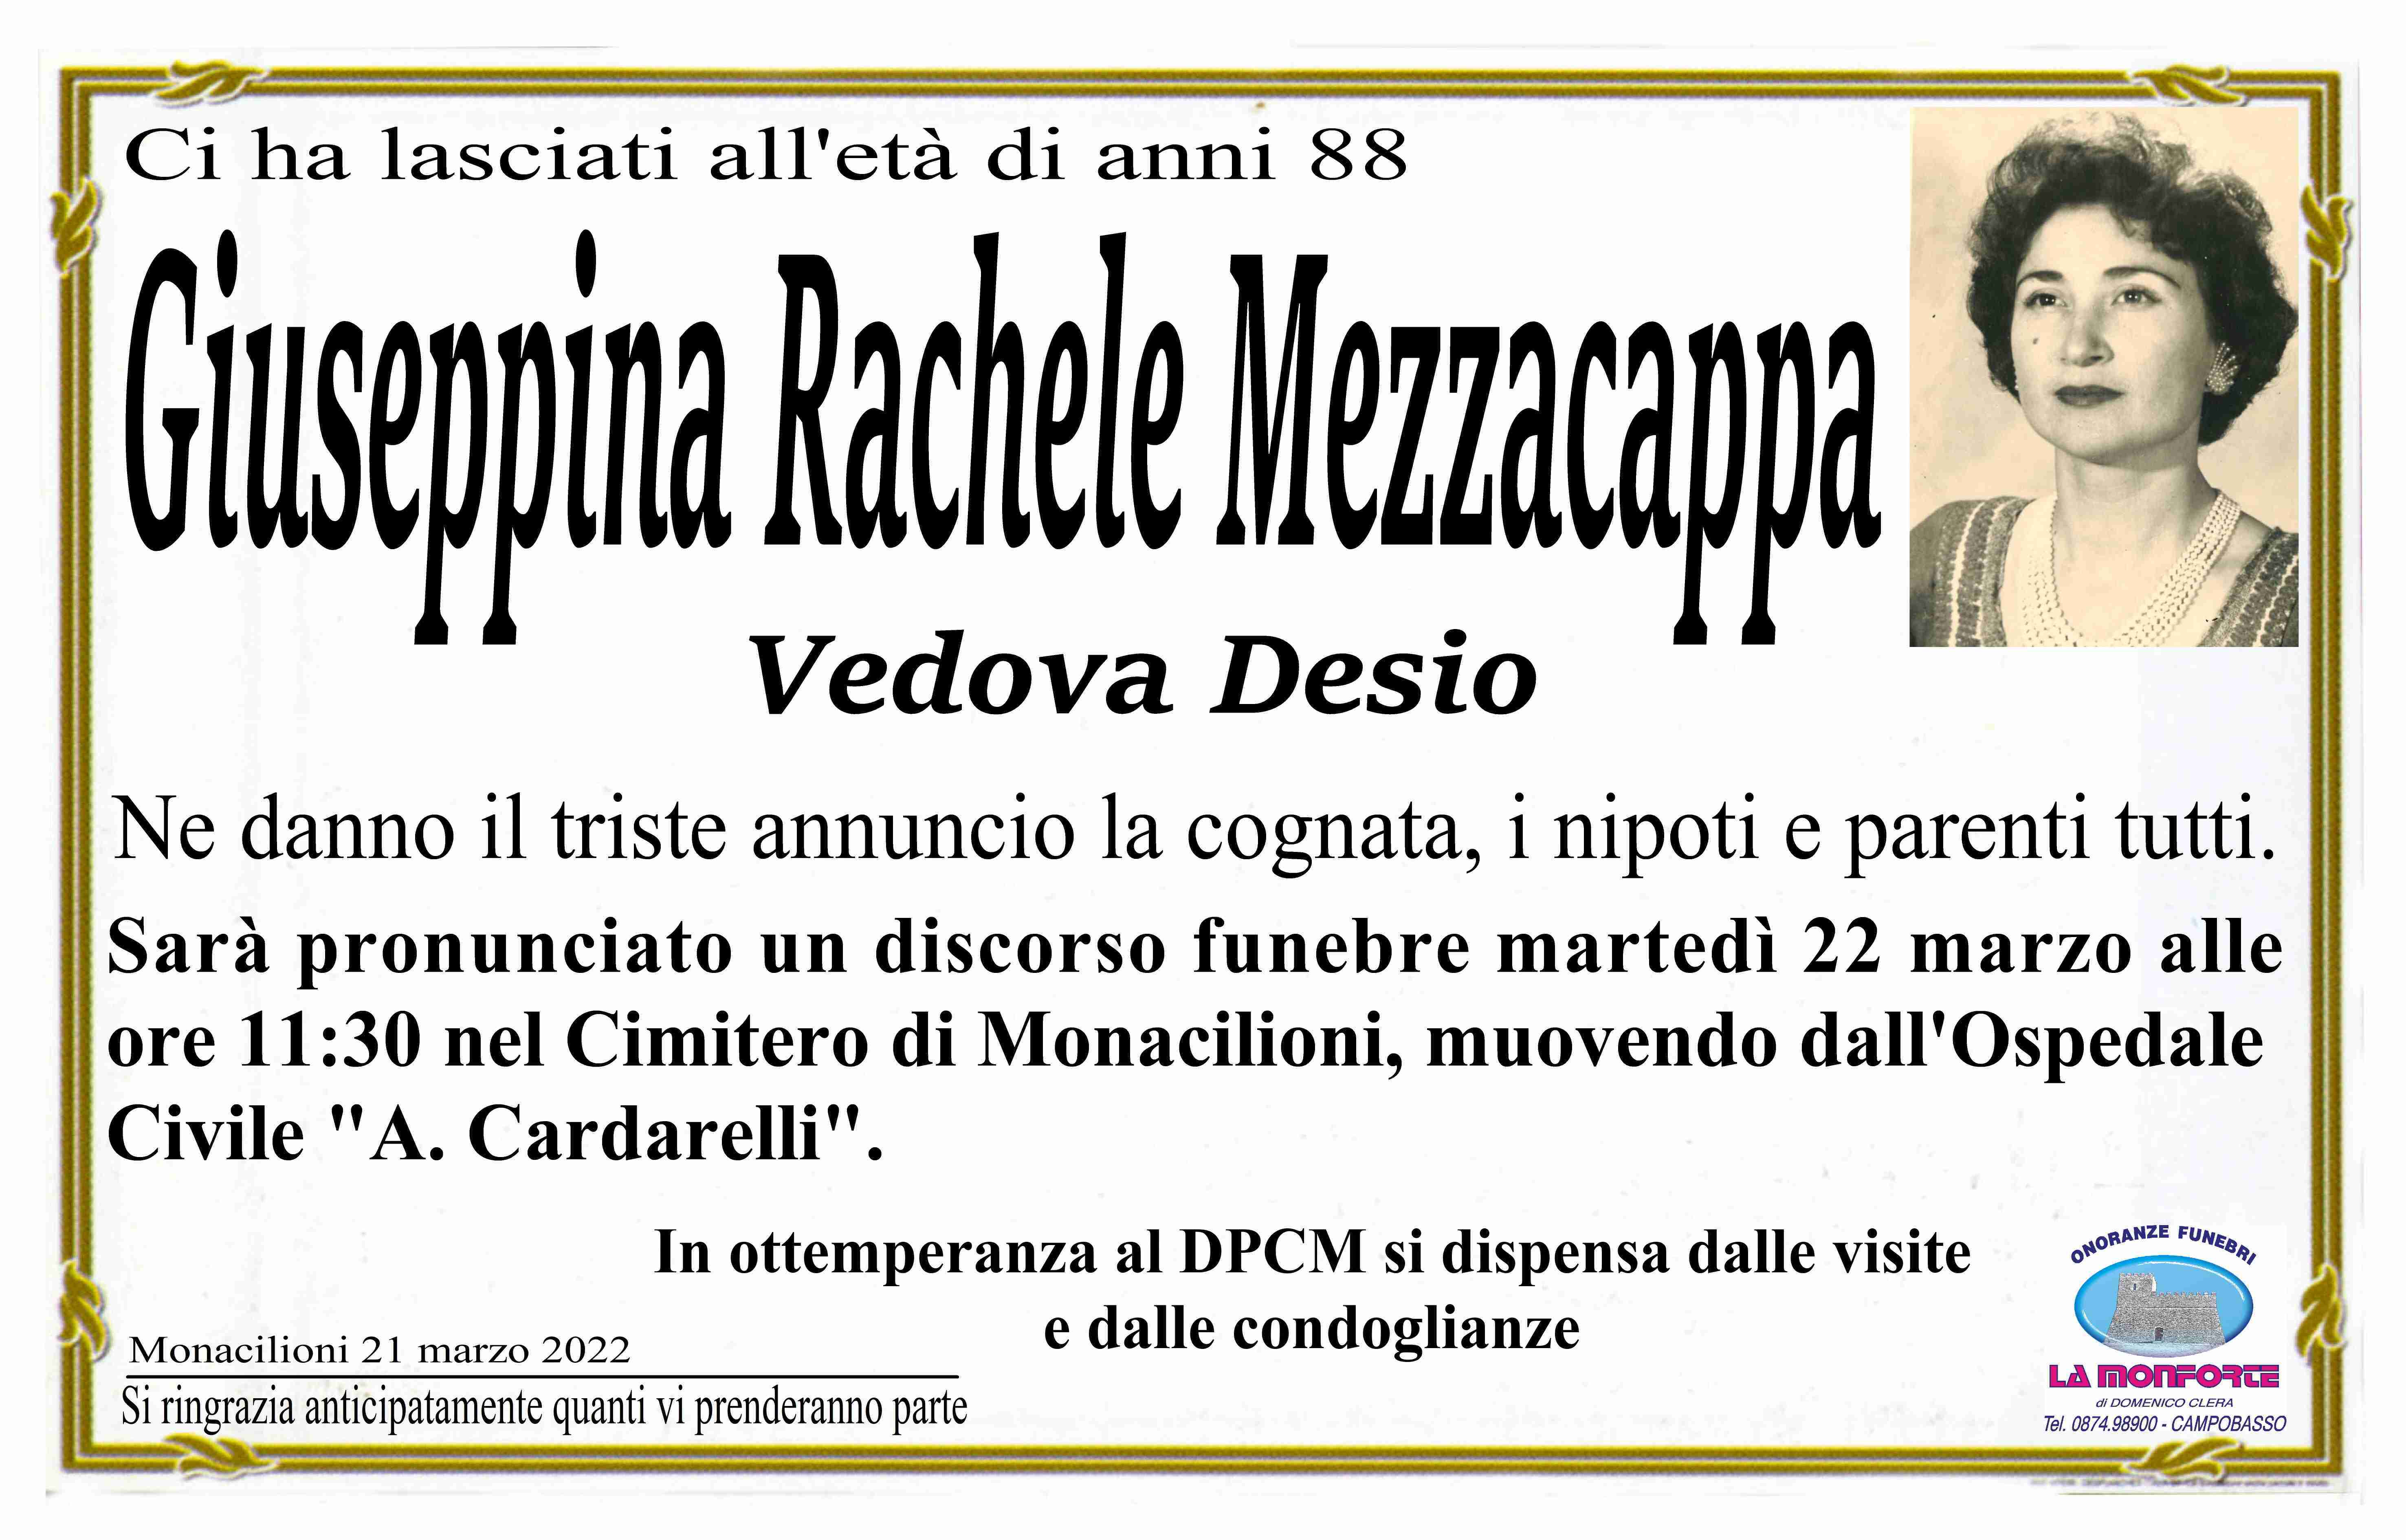 Giuseppina Rachele Mezzacappa